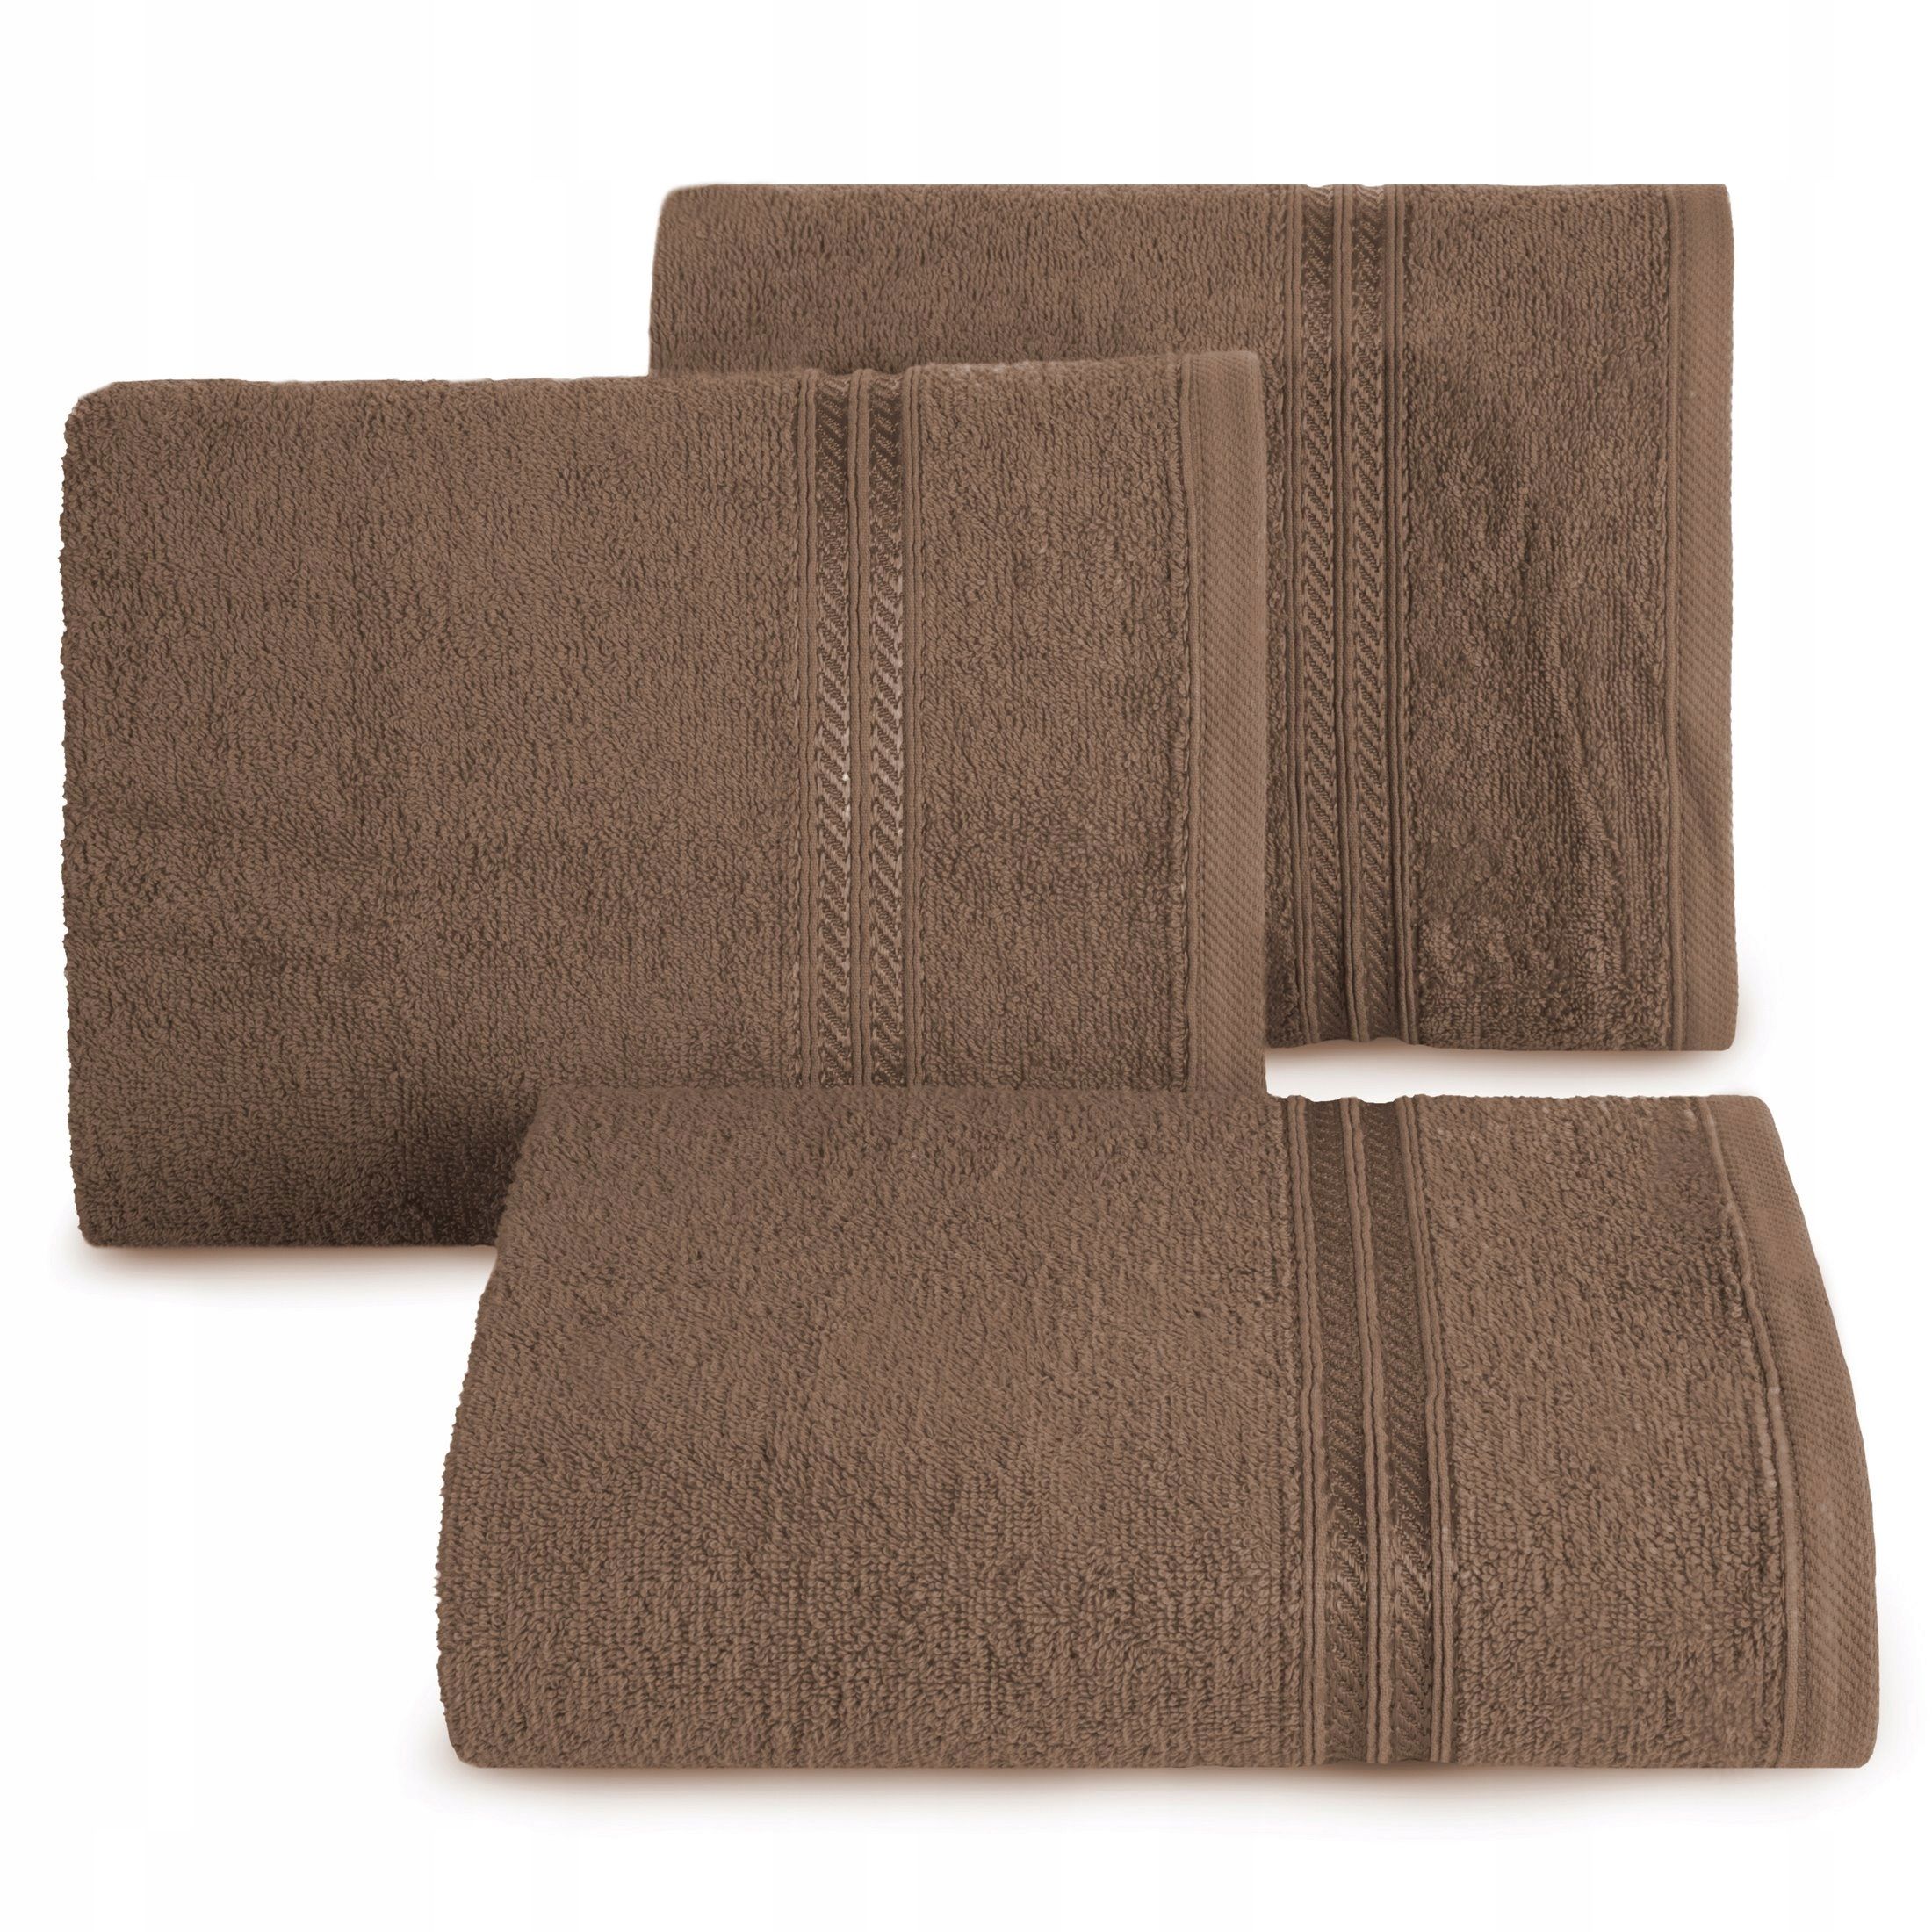 Ręcznik Lori 70x140 brązowy 450g/m2